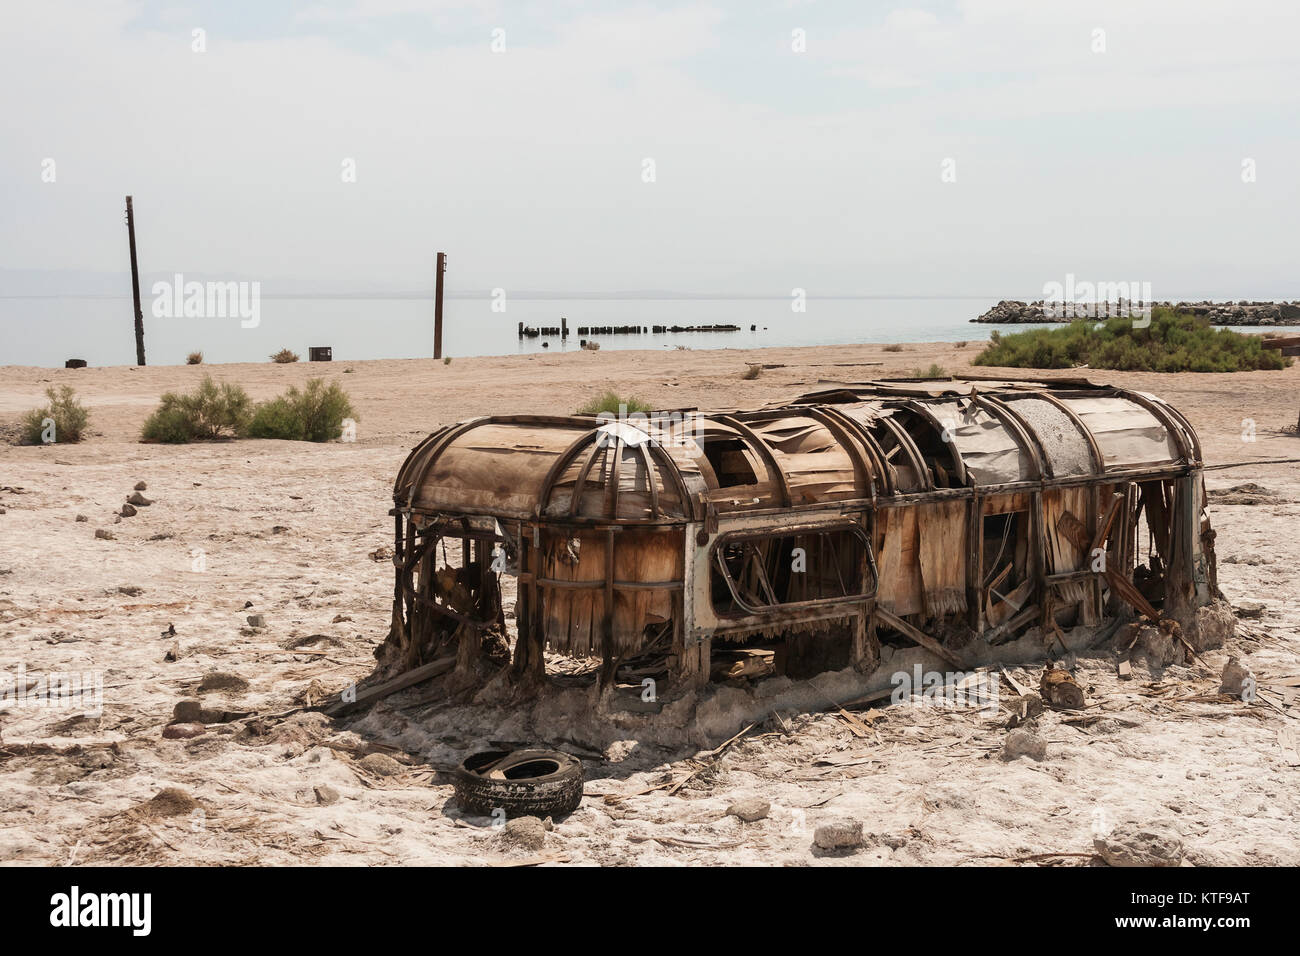 Un lacerato, mezzo sepolto e abbandonato il rimorchio a Salton Sea Beach, California, Stati Uniti d'America - estate 2007. Questo sito non esiste più. Foto Stock